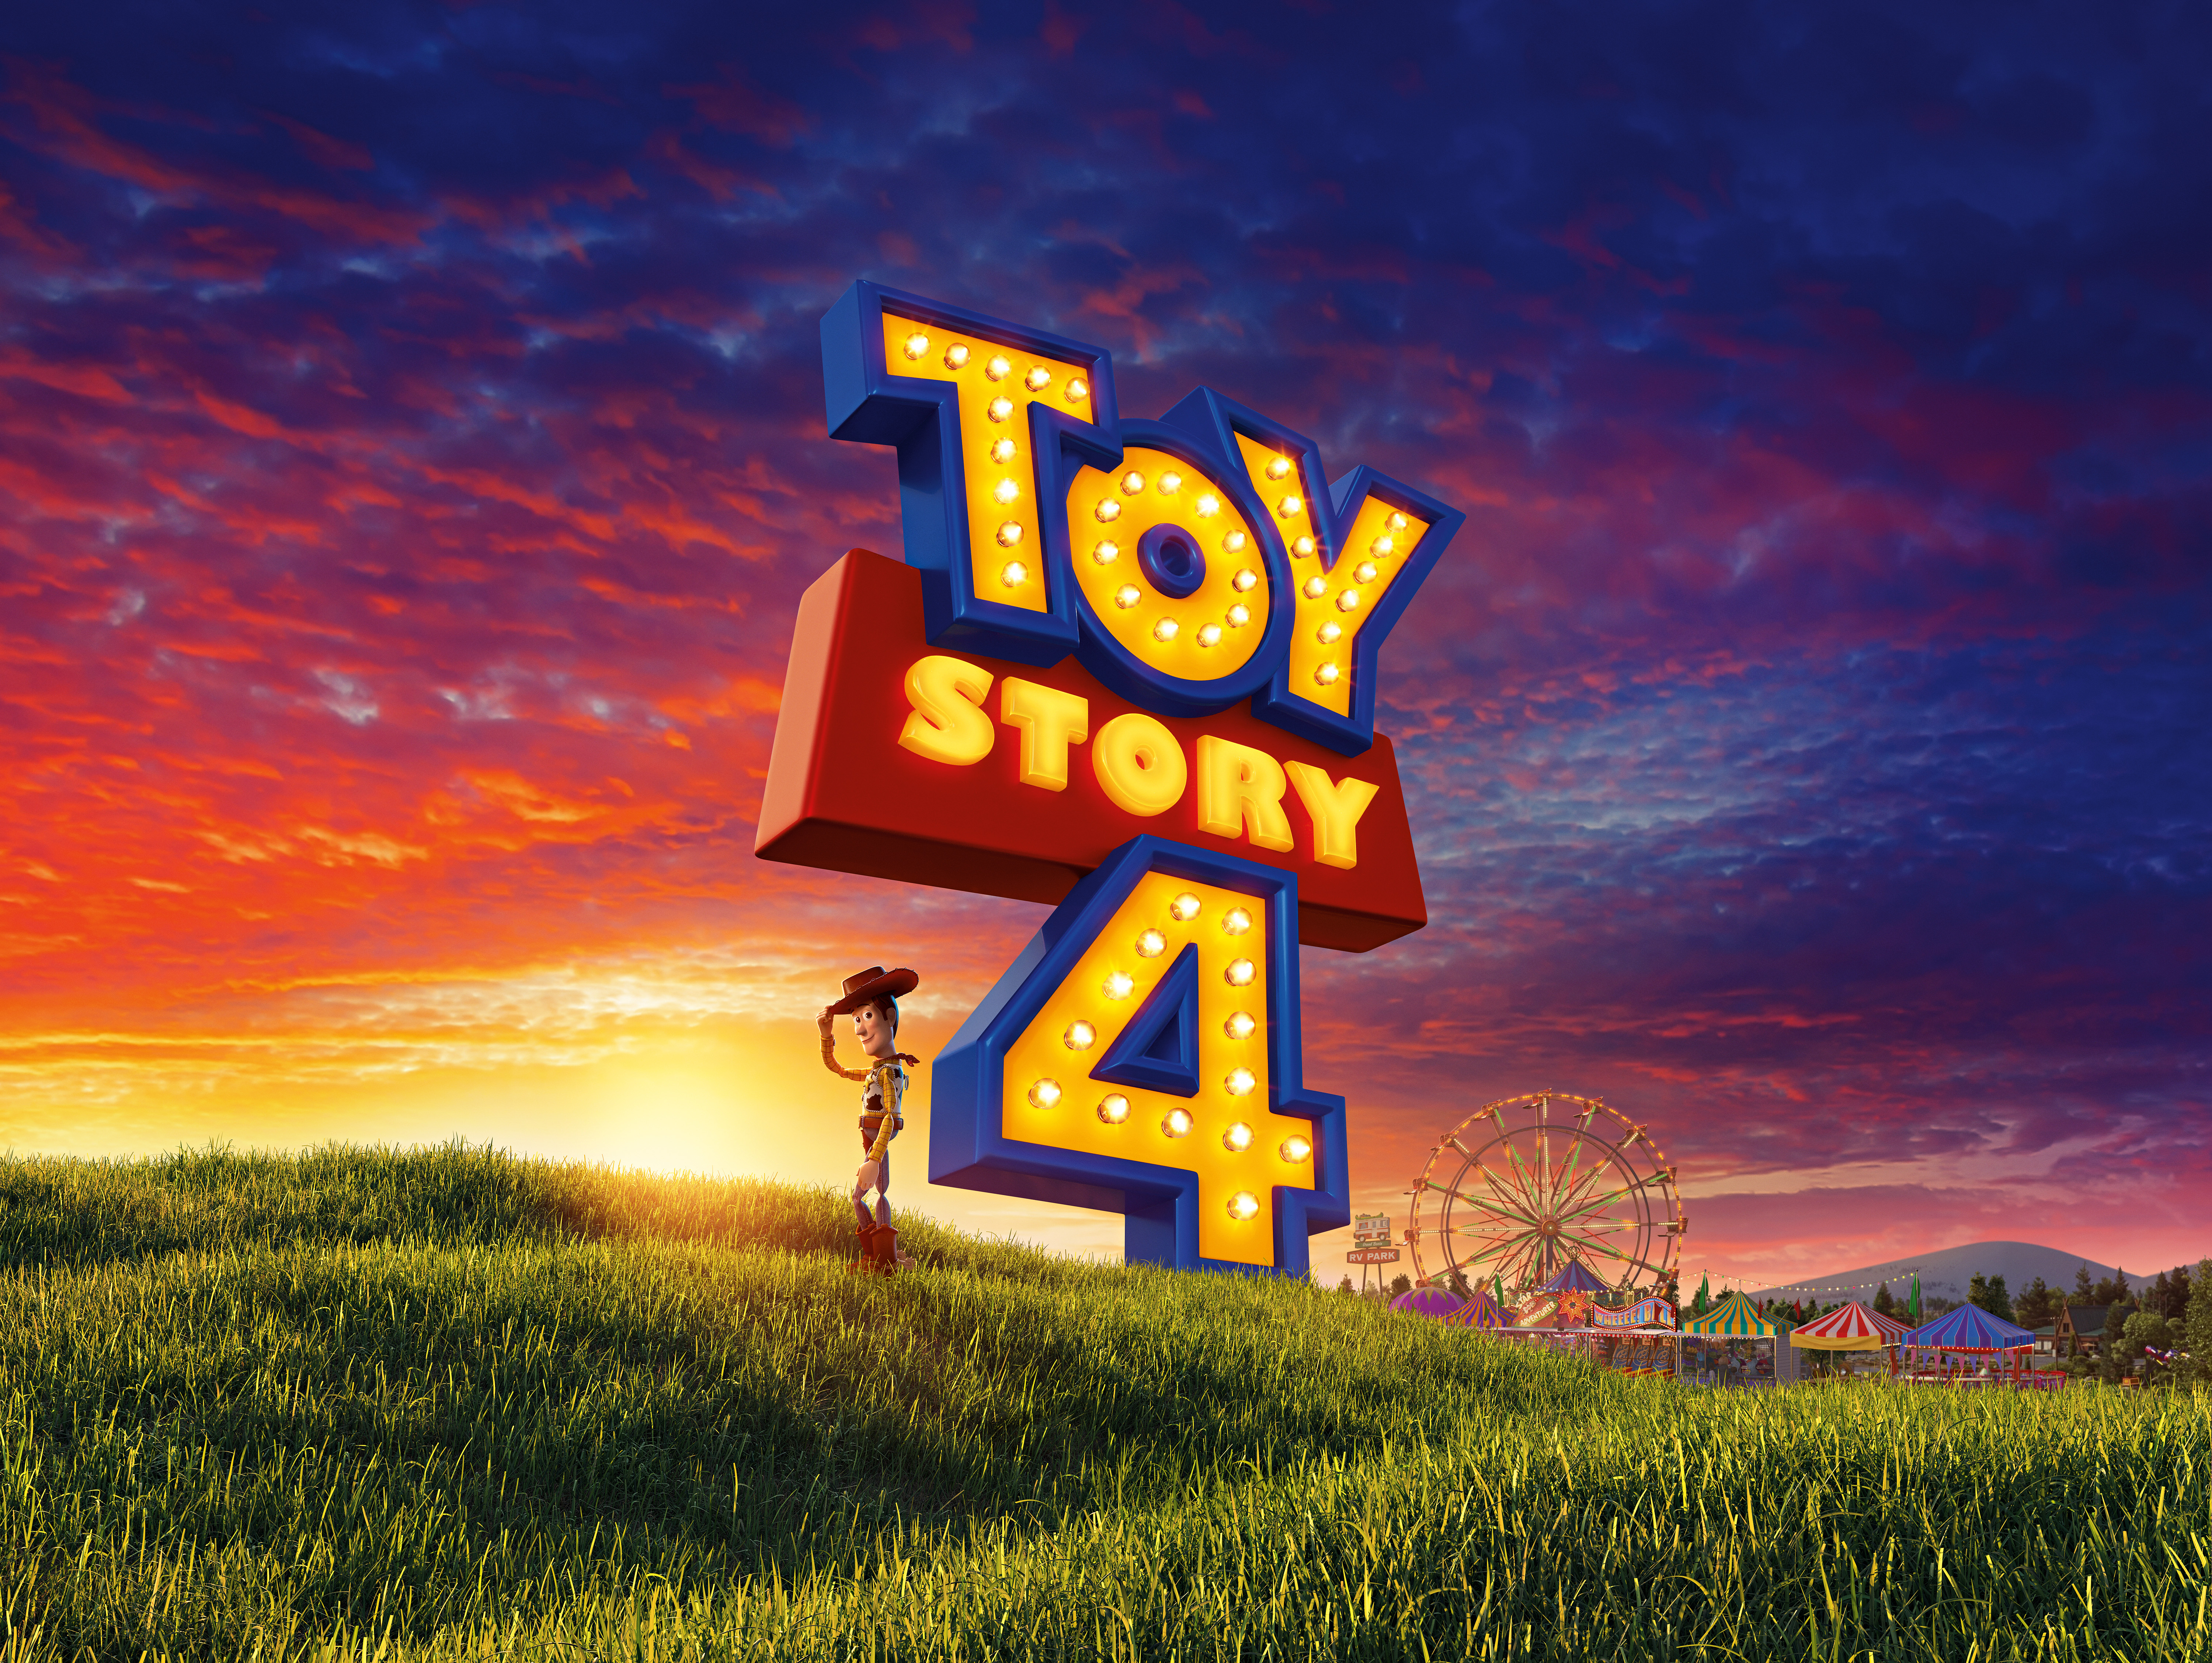 Pixar posters. История игрушек. Toy story 4. Pixar заставка. История игрушек обои на рабочий стол.